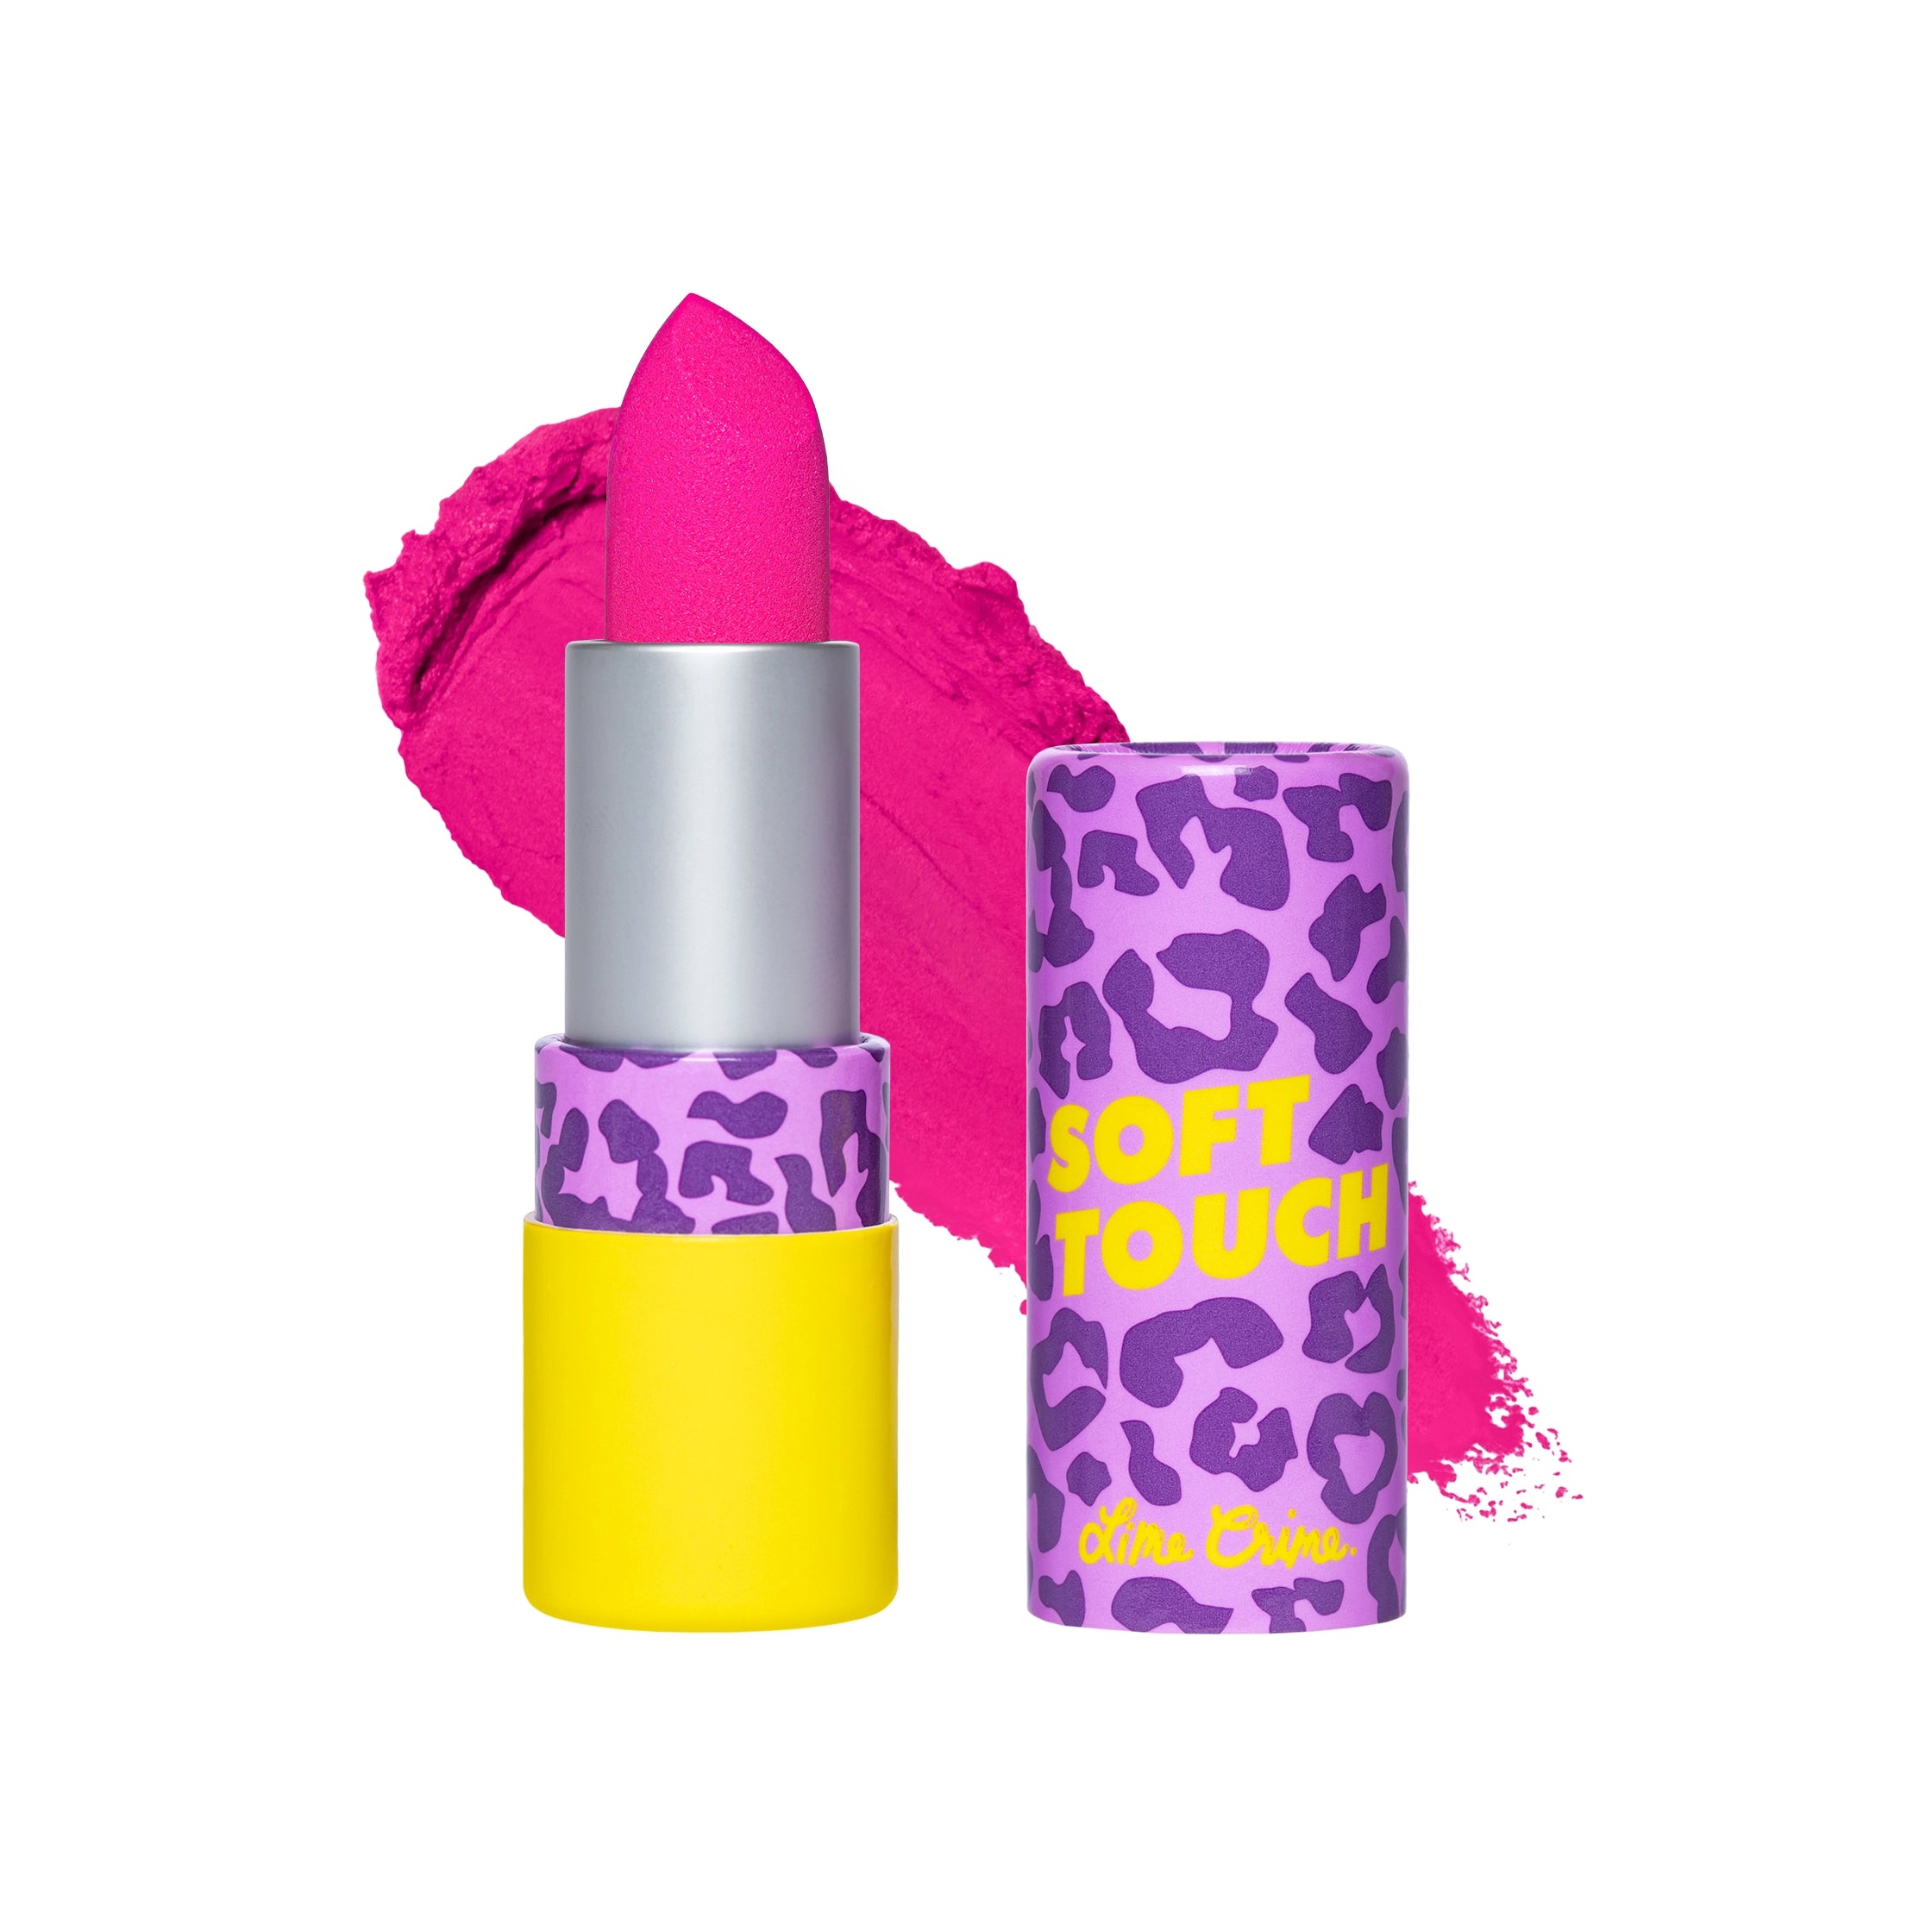 Soft Touch Lipstick variant:Fuchsia Flare